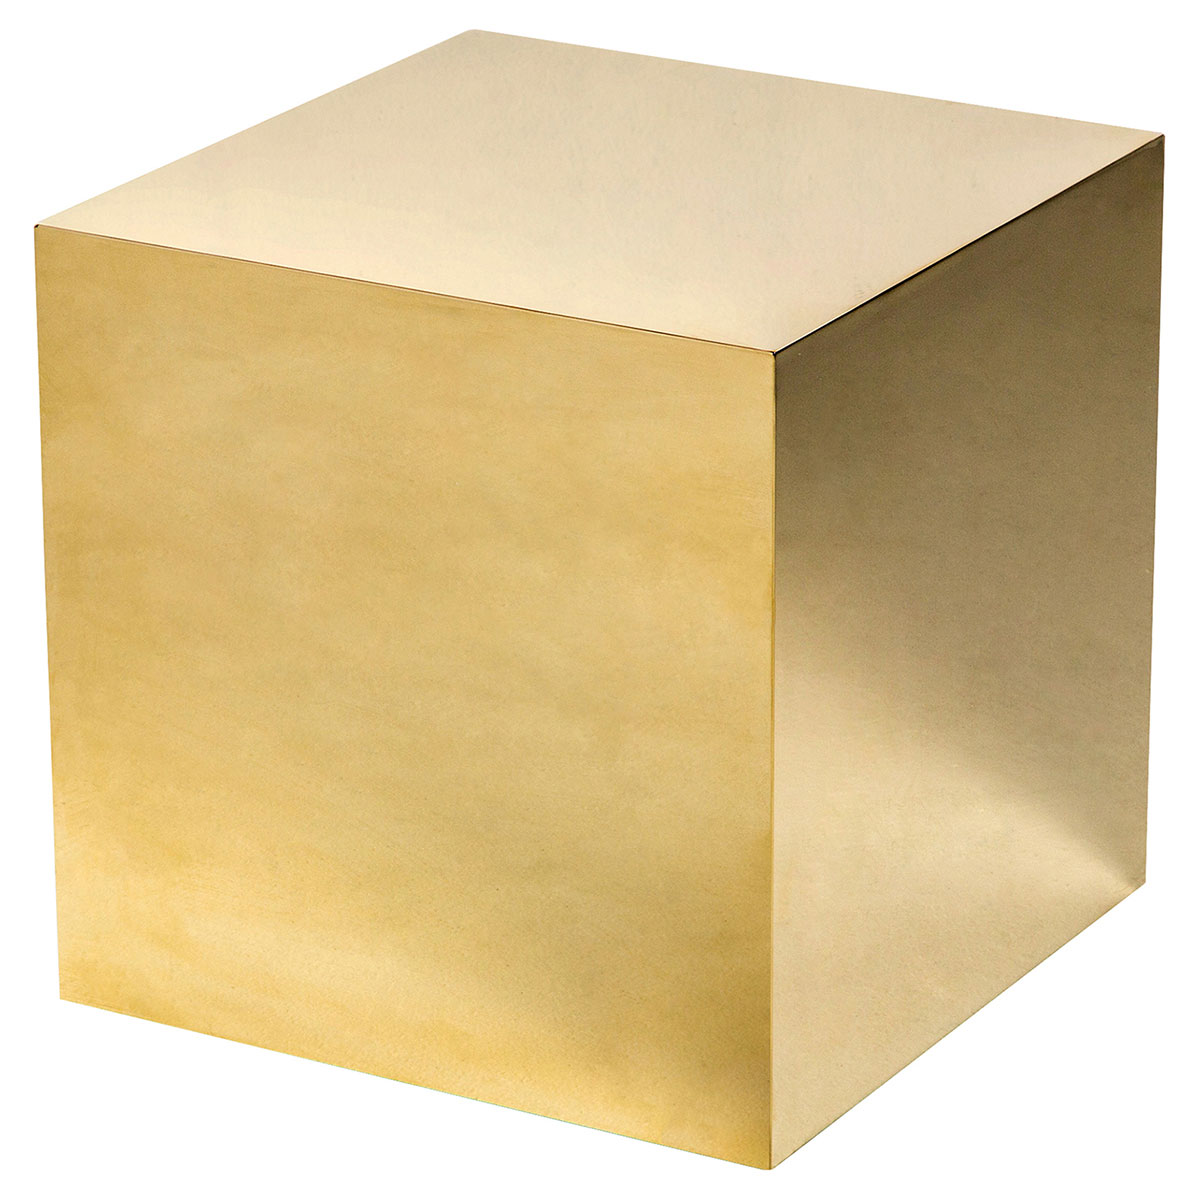 полый куб